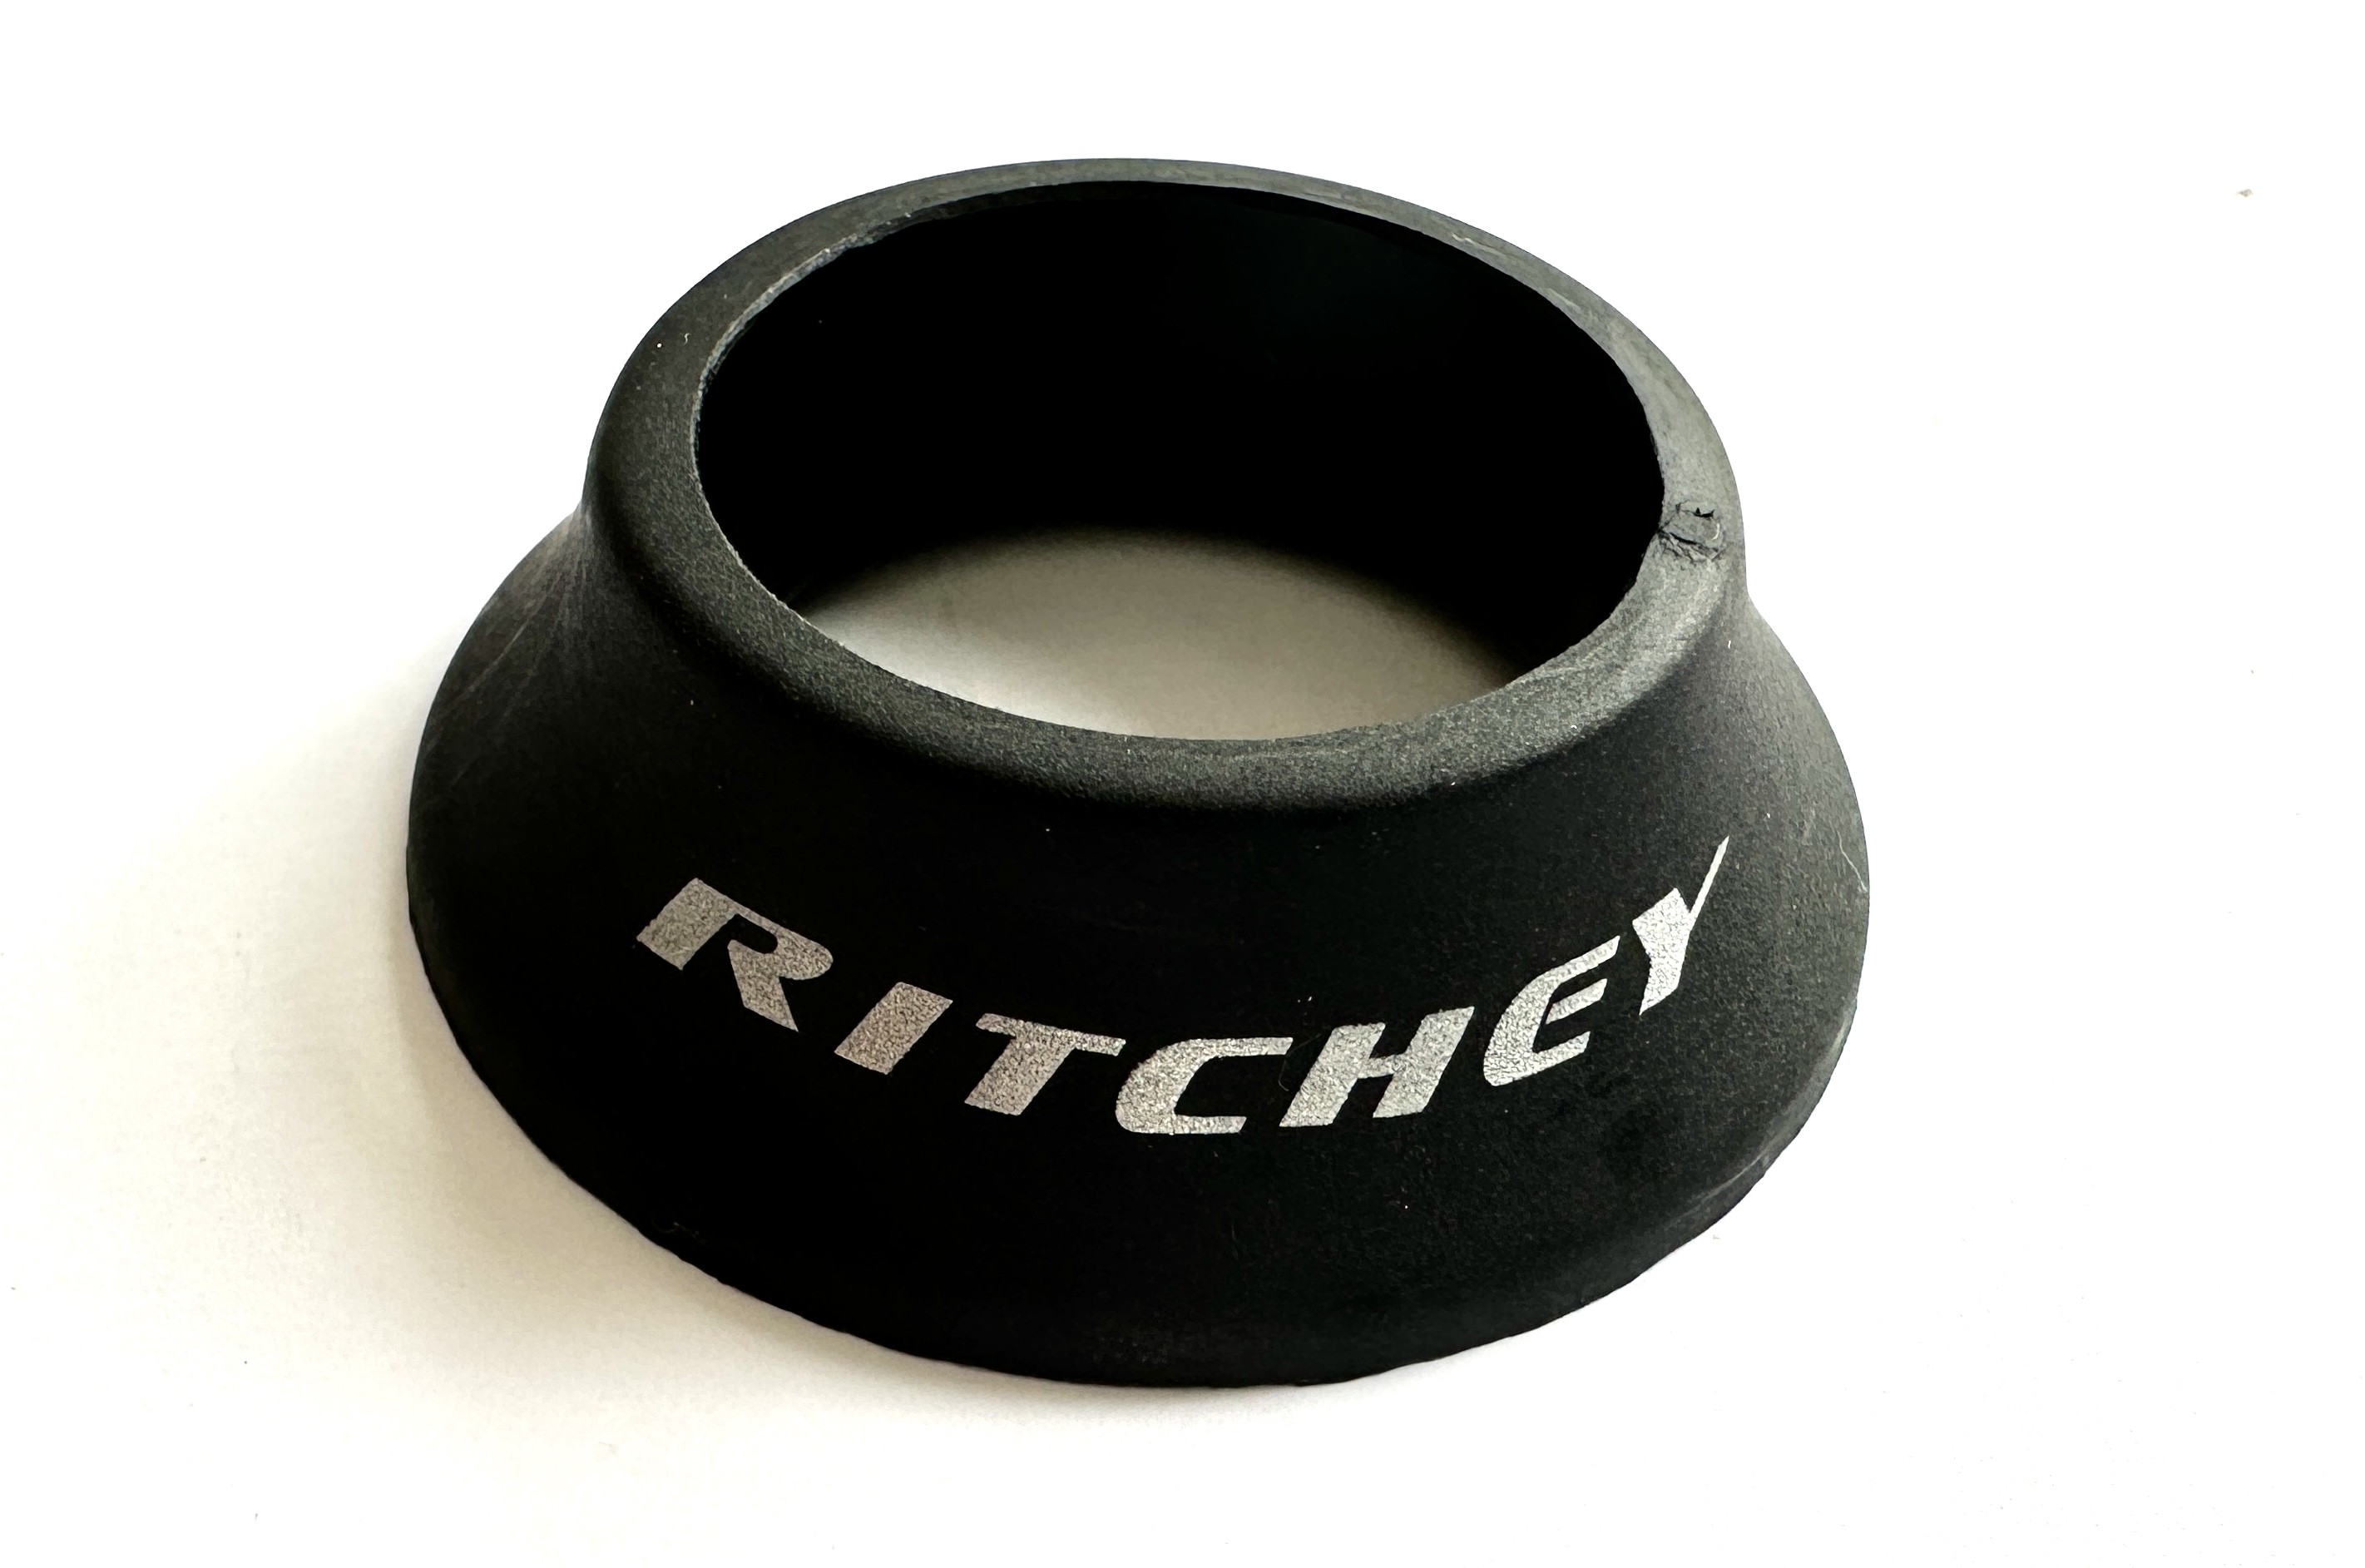 Entretoise conique de Ritchey pour jeu de direction semi-intégré.